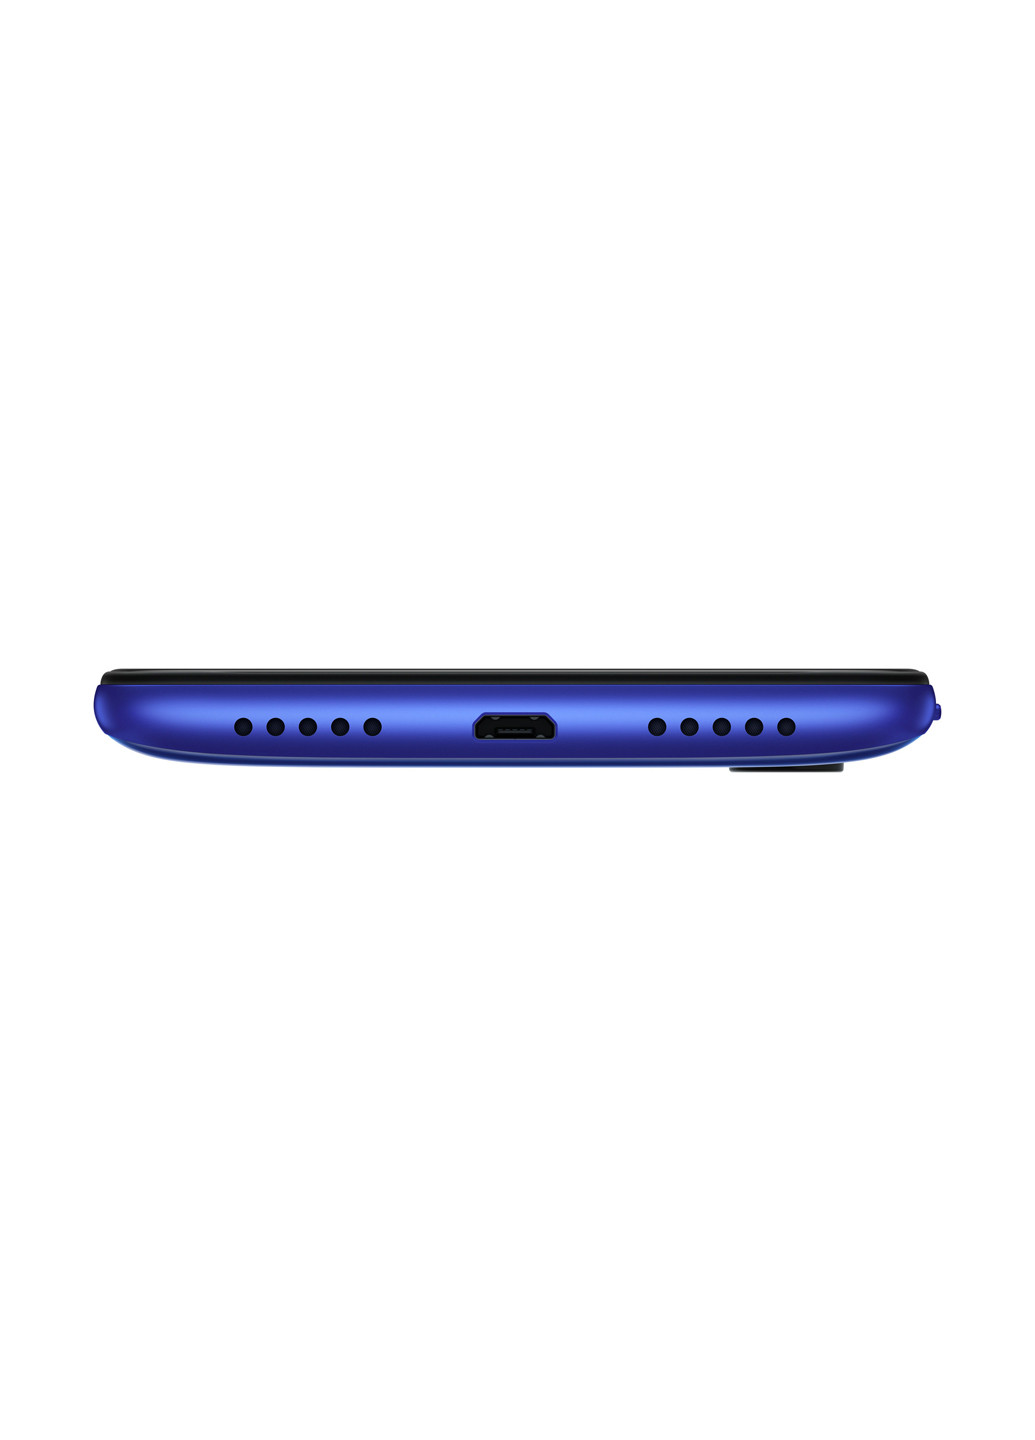 Смартфон Redmi 7 3 / 32GB Comet Blue Xiaomi redmi 7 3/32gb comet blue (130569678)